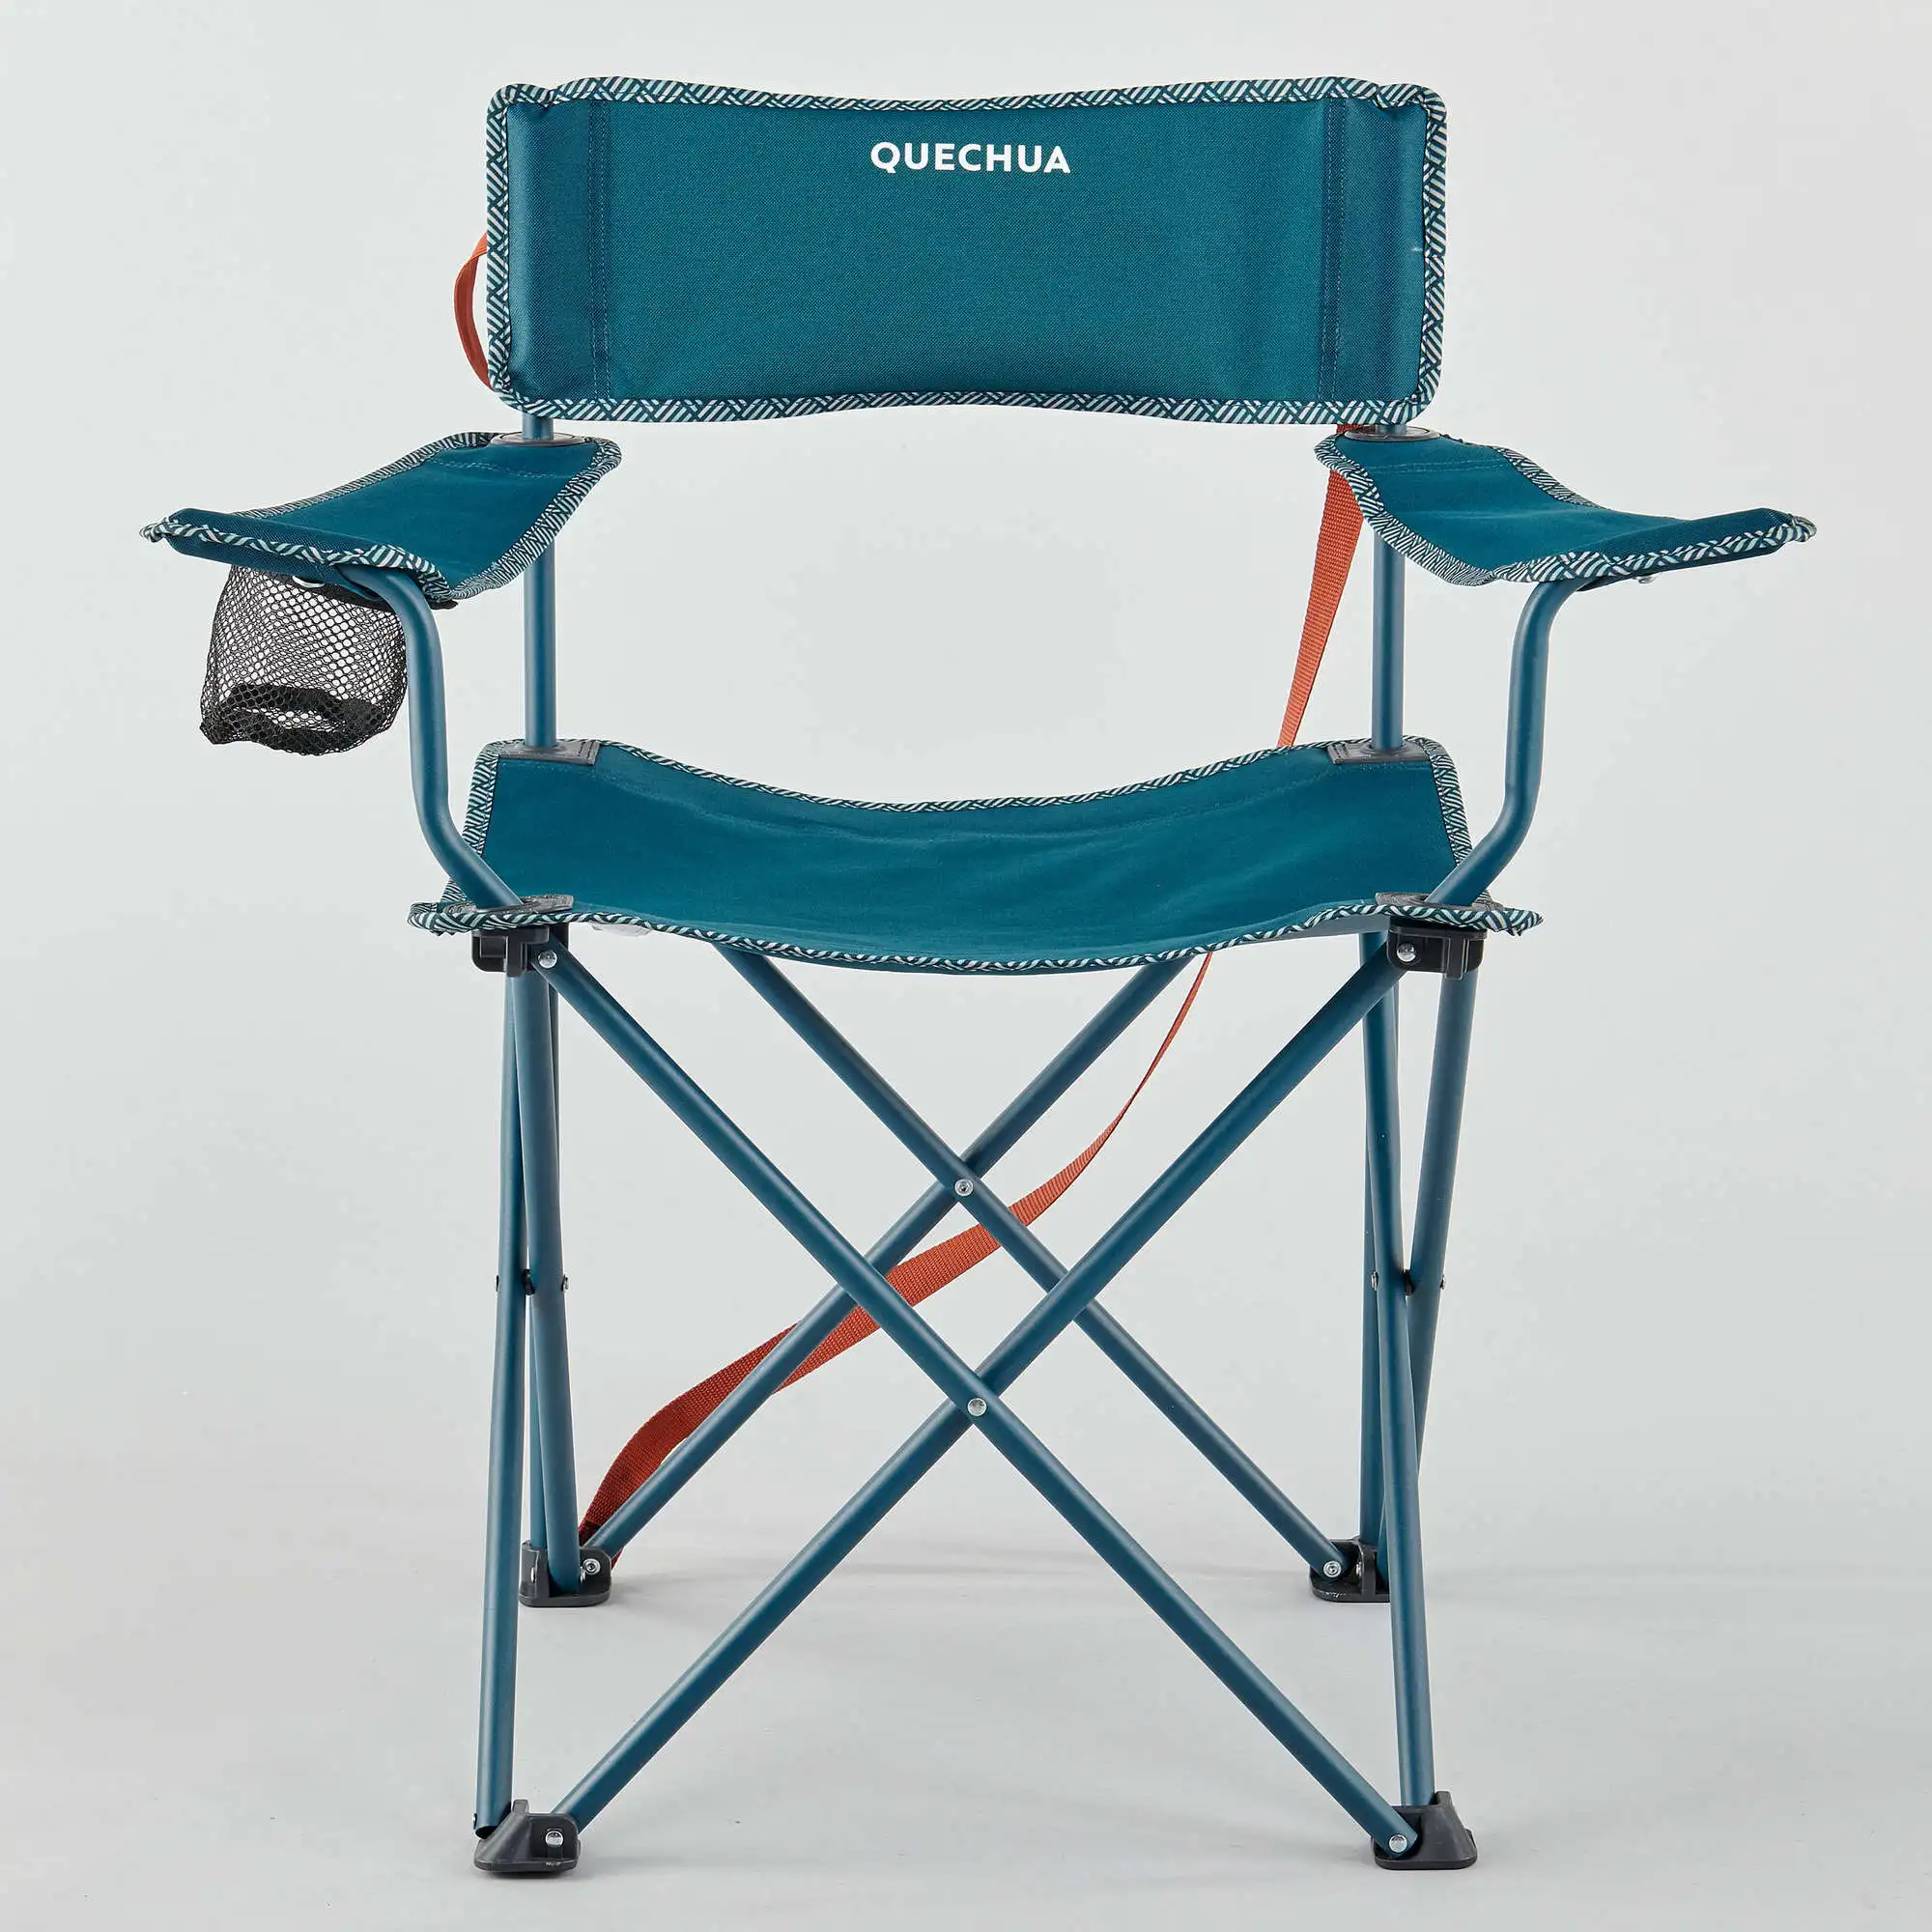 저렴한 휴대용 초경량 캠핑 의자 야외 접이식 낚시 의자 알루미늄 합금 해변 피크닉 의자 블루